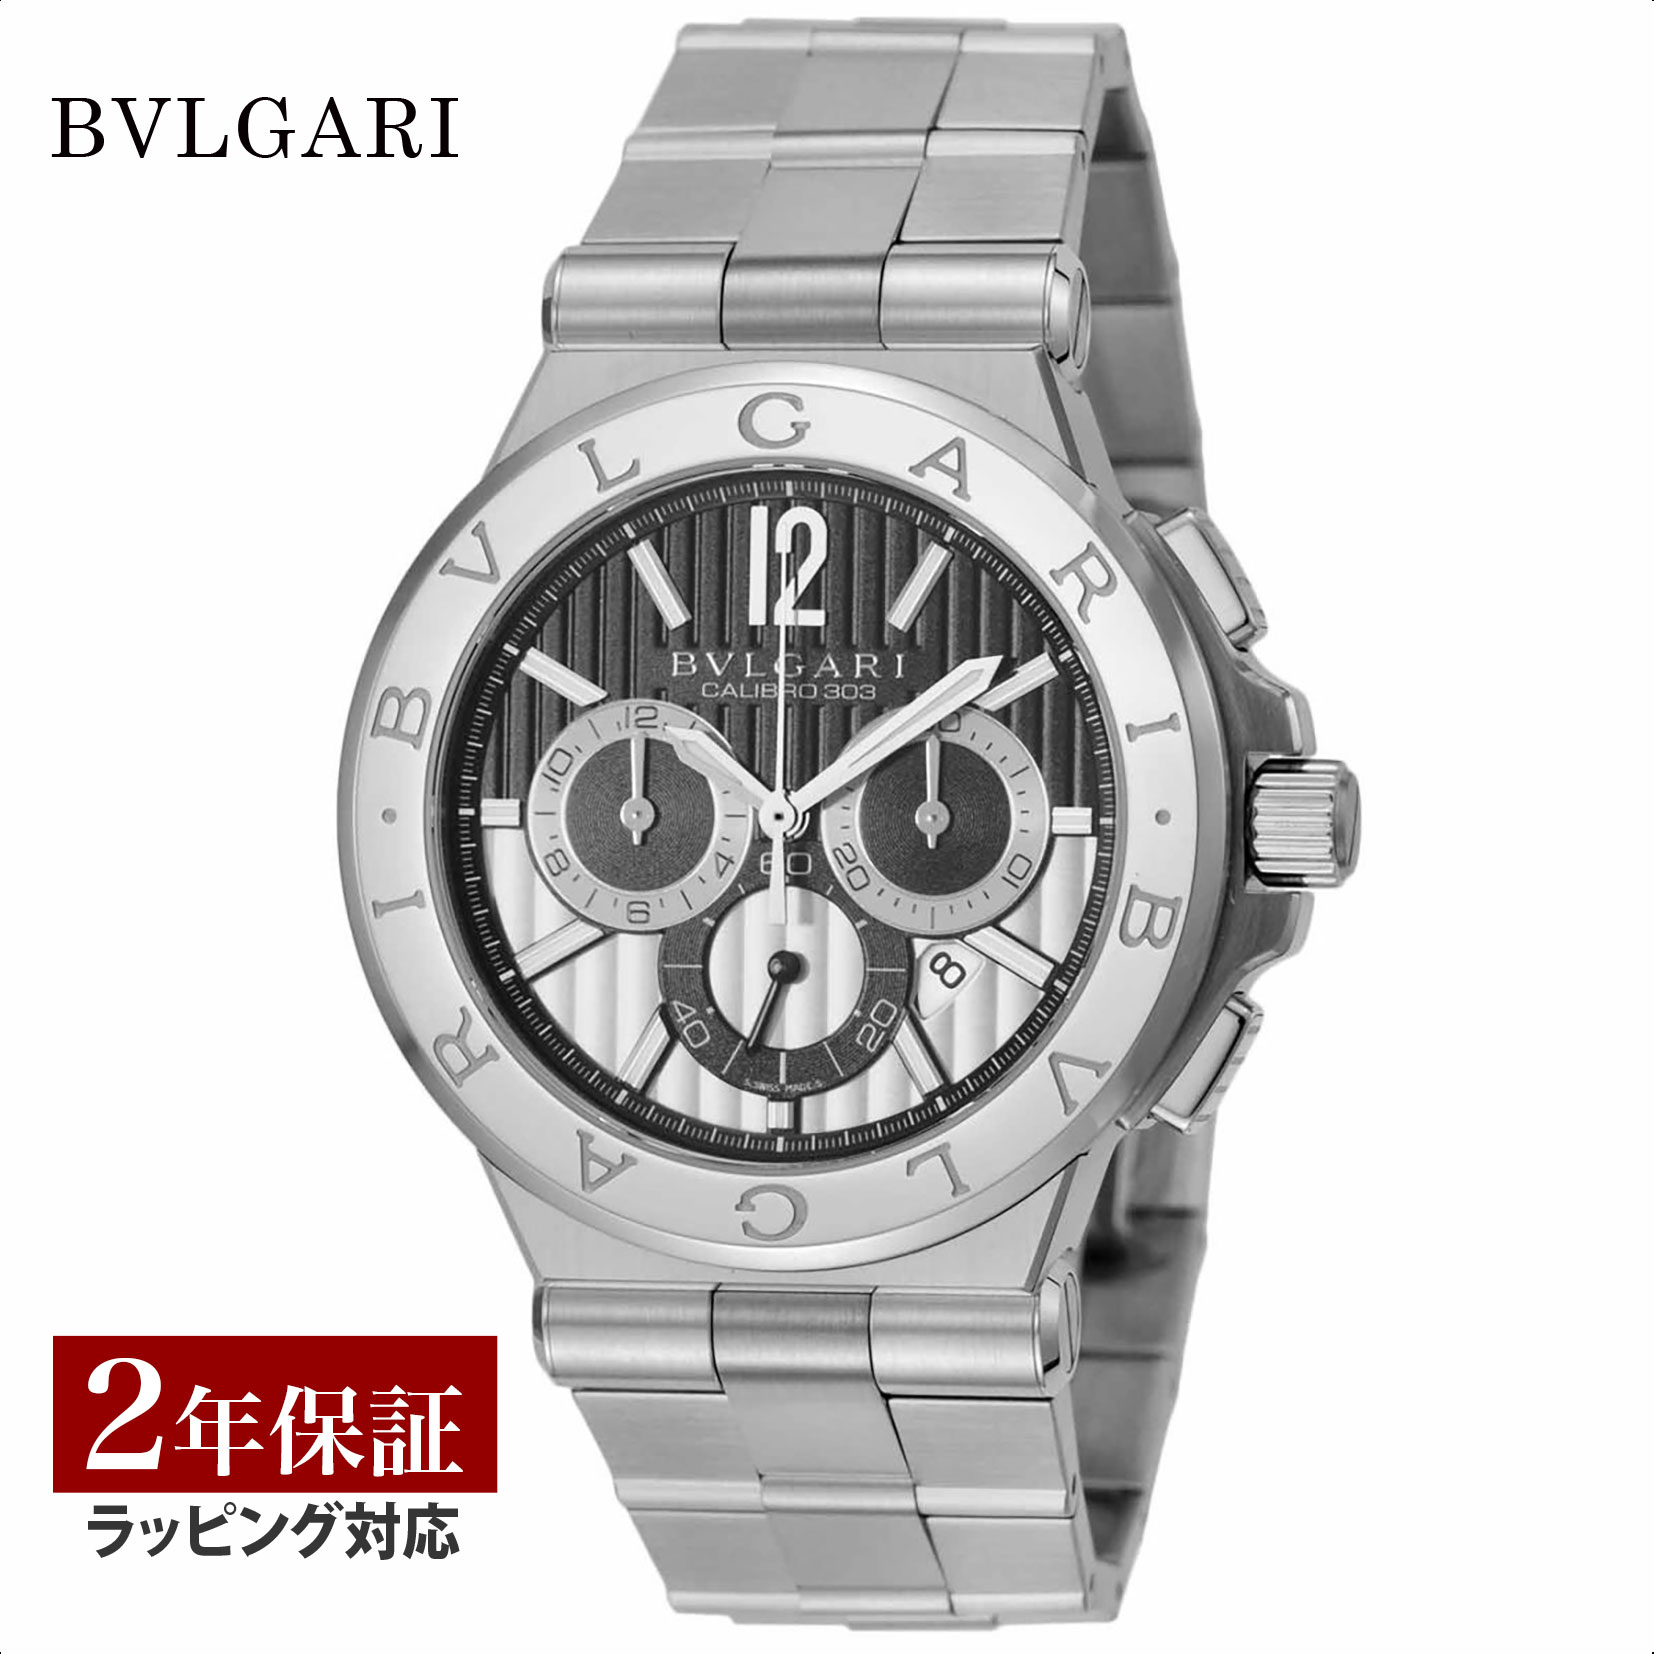 ブルガリ BVLGARI メンズ 時計 Diagono ディアゴノ 自動巻 ブラック DG42BSSDCH 時計 腕時計 高級腕時計 ブランド 【ローン金利無料】